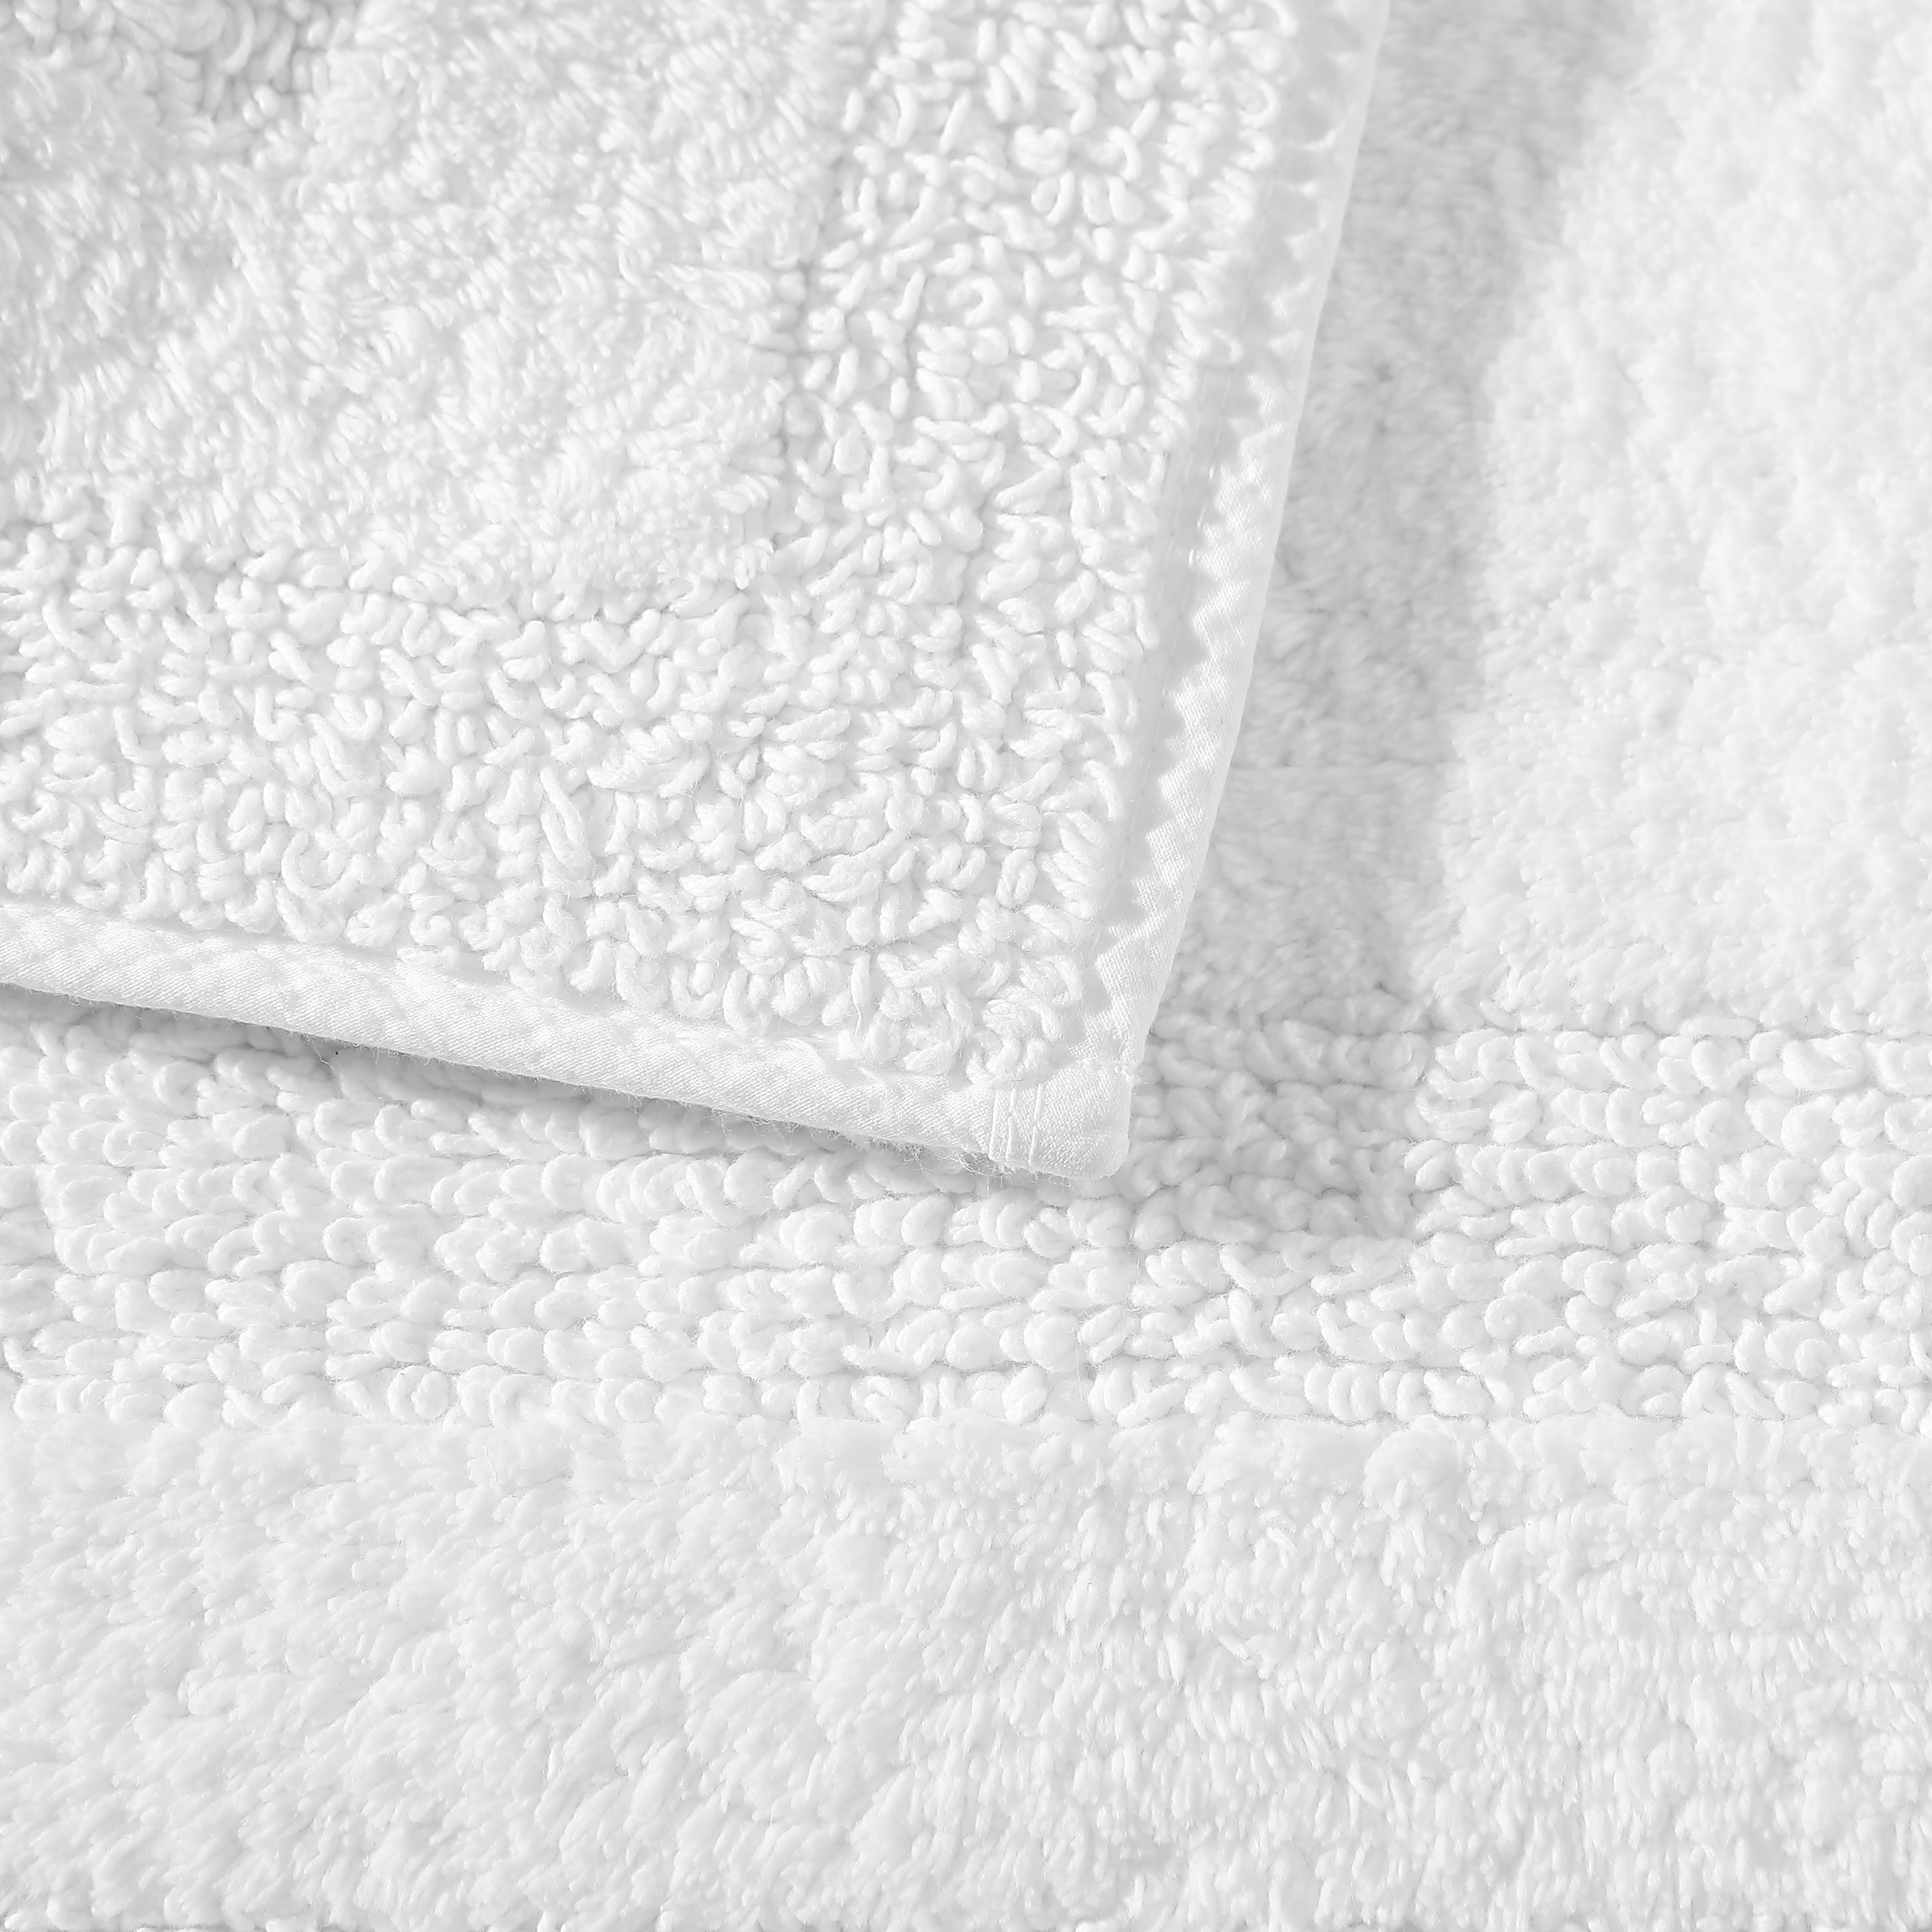 Nautica Micellar Cotton Solid Reversible 2 Piece Bath Rug Set - Grey